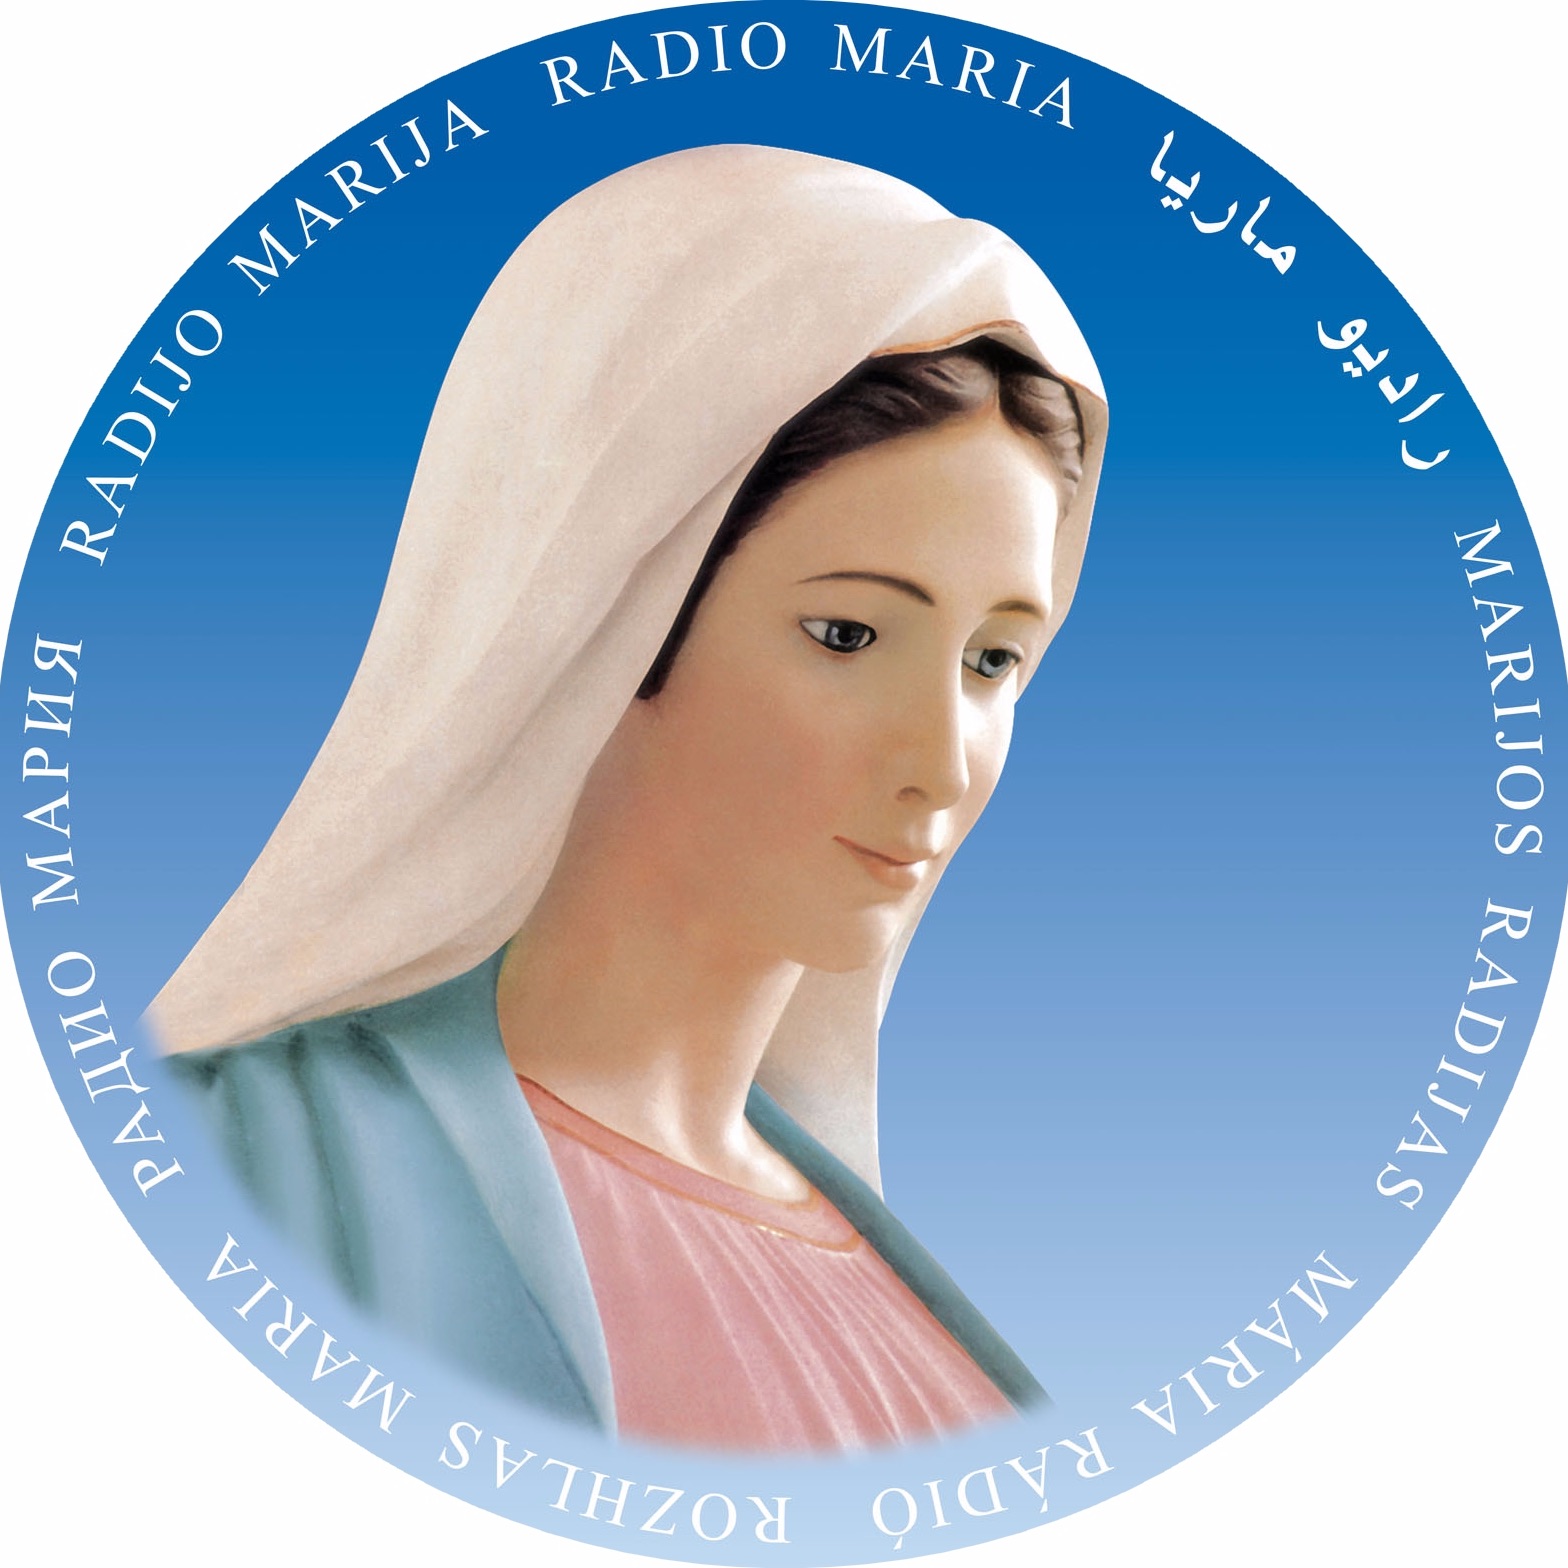 Radio Maria France - radio catholique